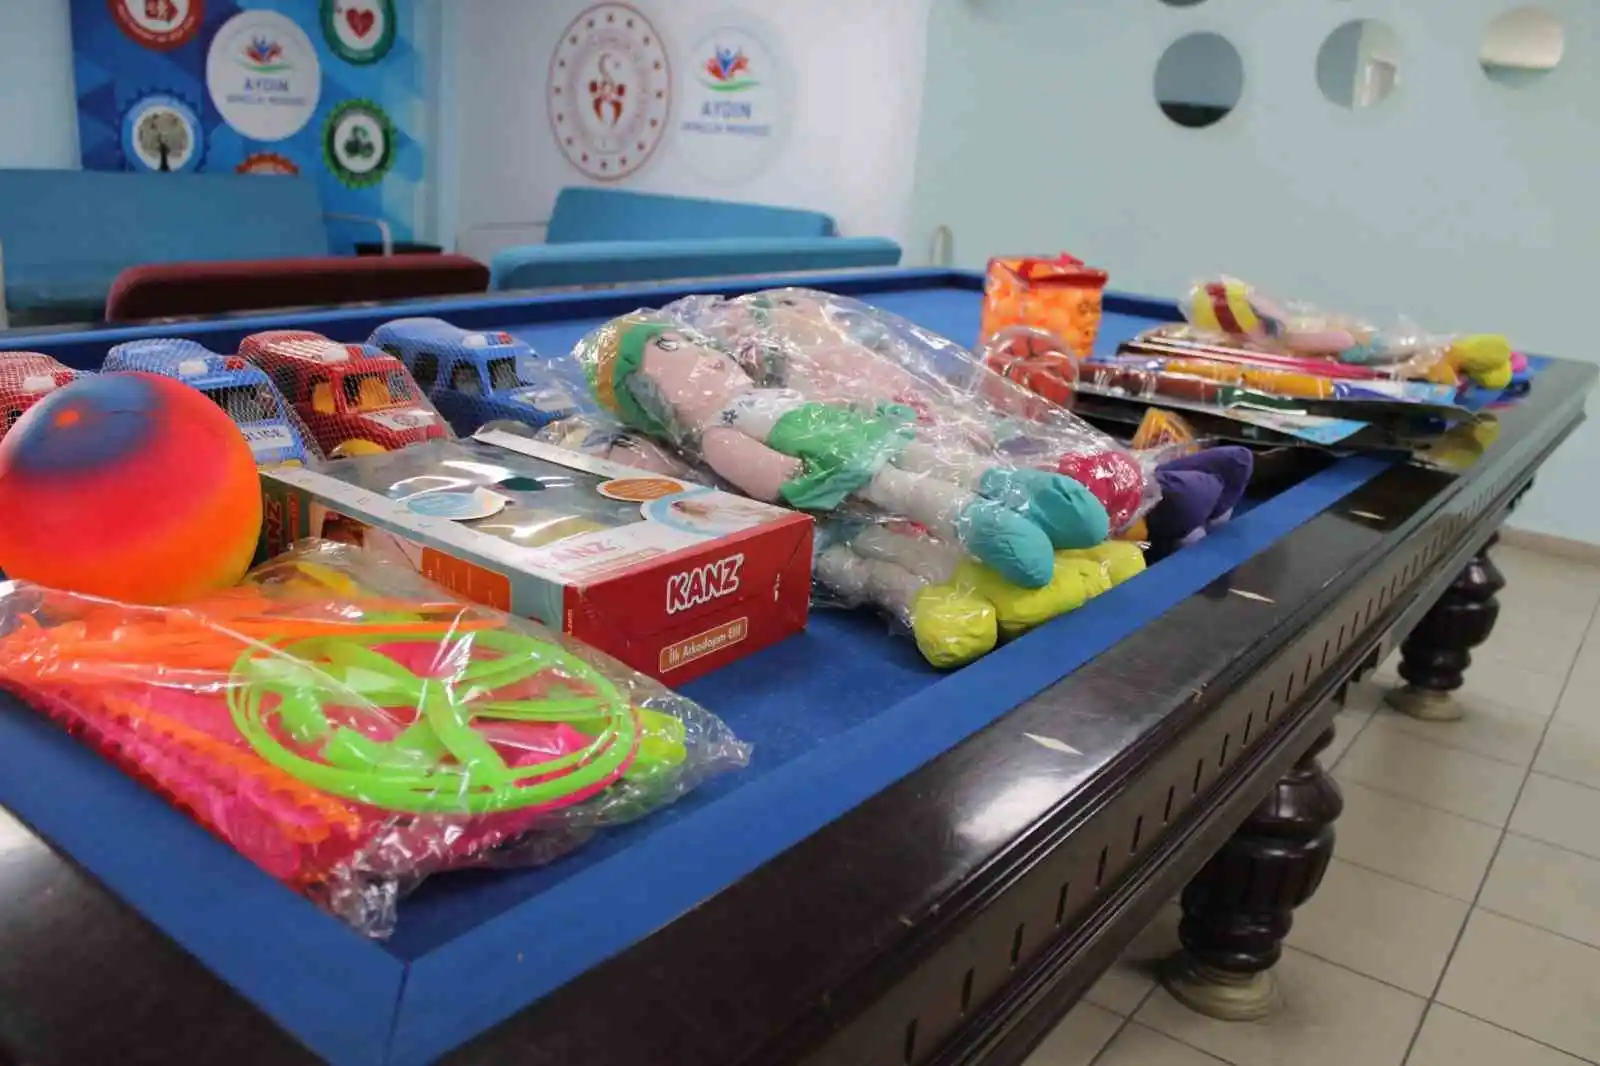 Aydın’da depremzede çocuklar için oyuncak kampanyası başlatıldı
